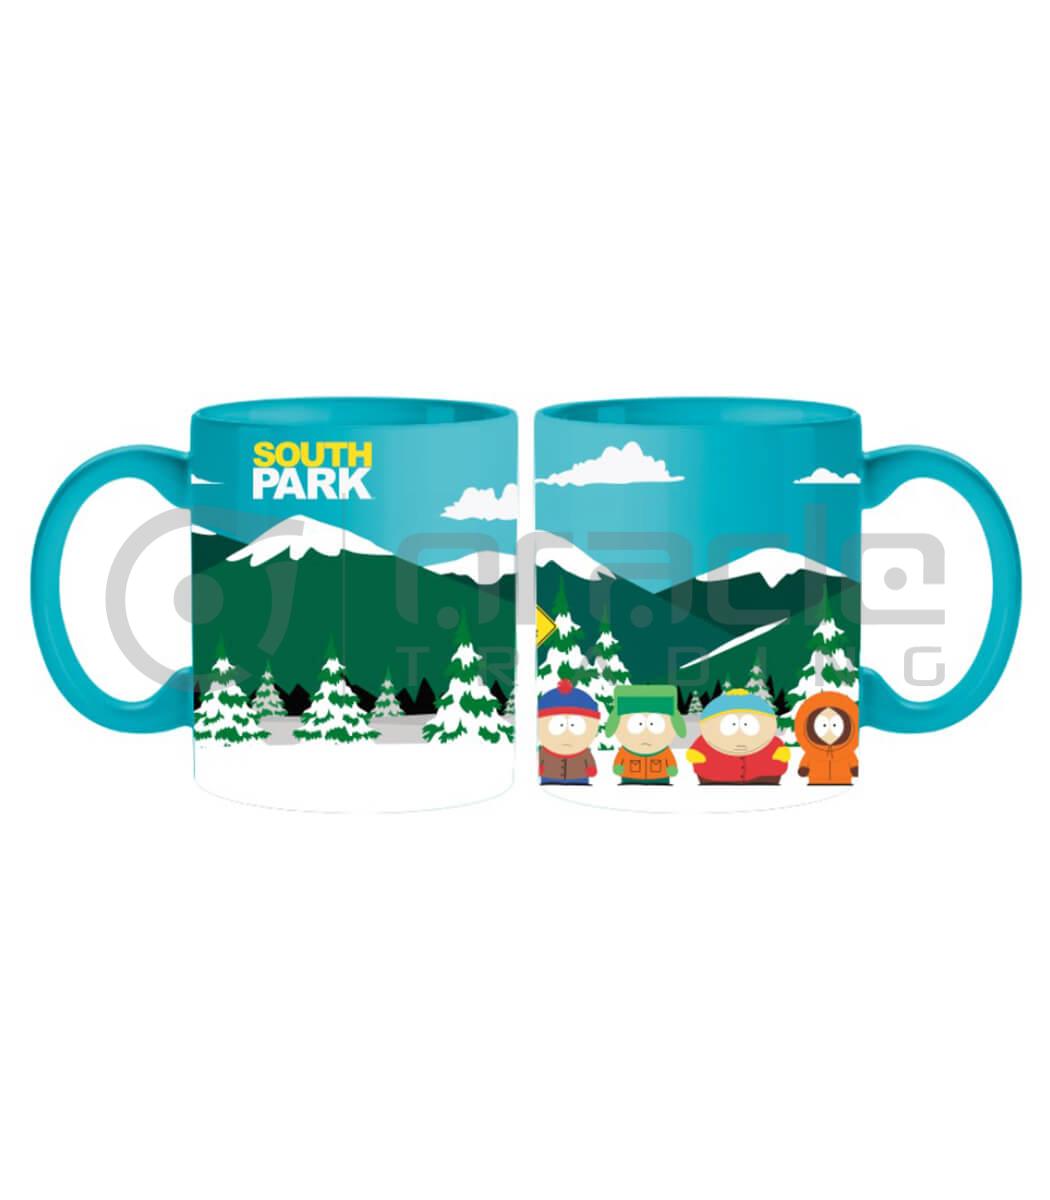 South Park Jumbo Mug - Bus Stop